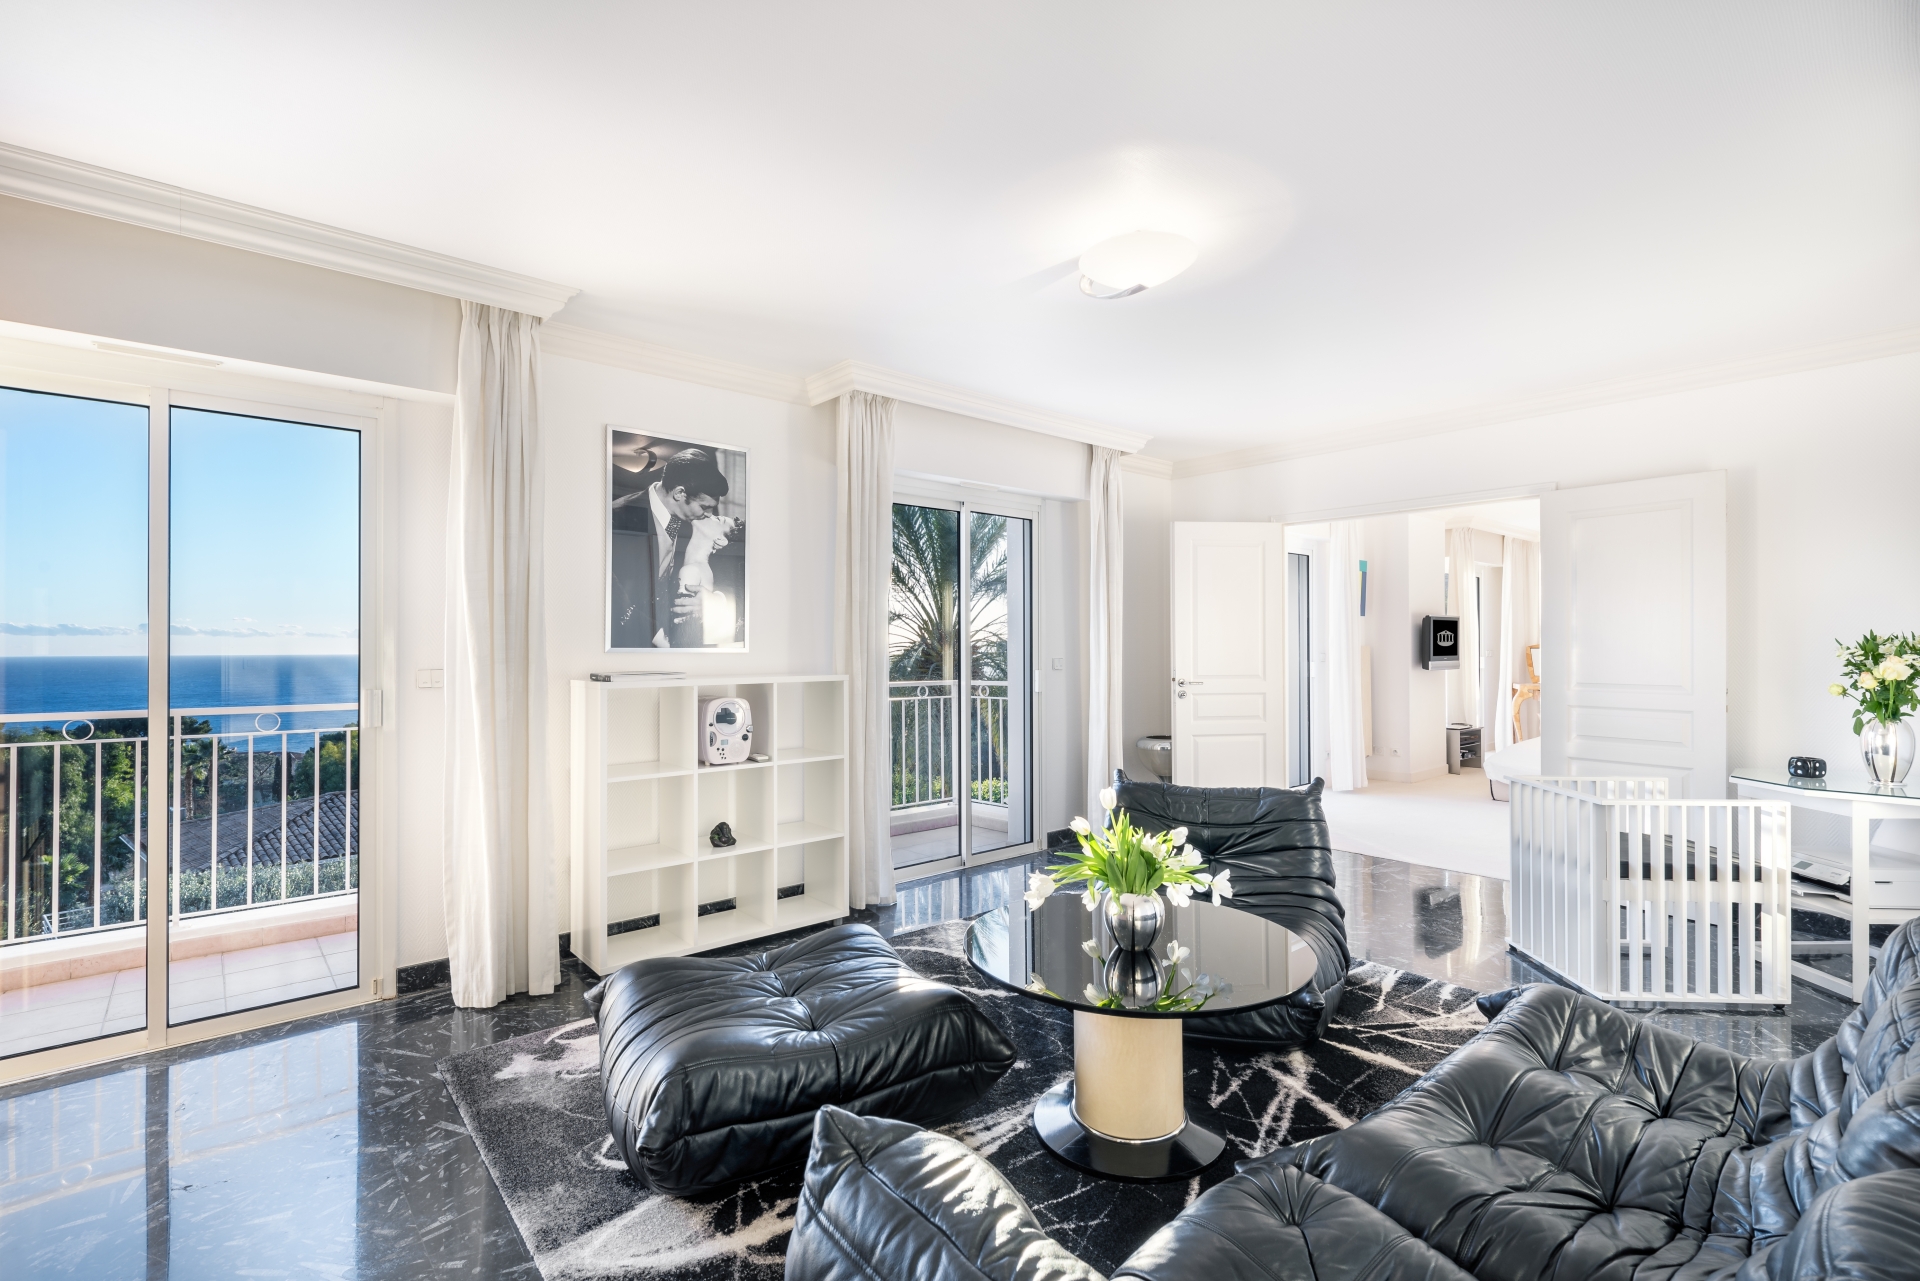 Dotta Villa for rent - VILLA PETIT REVE - Cap d'Ail - Cap-d'Ail - imglounge-guestroom